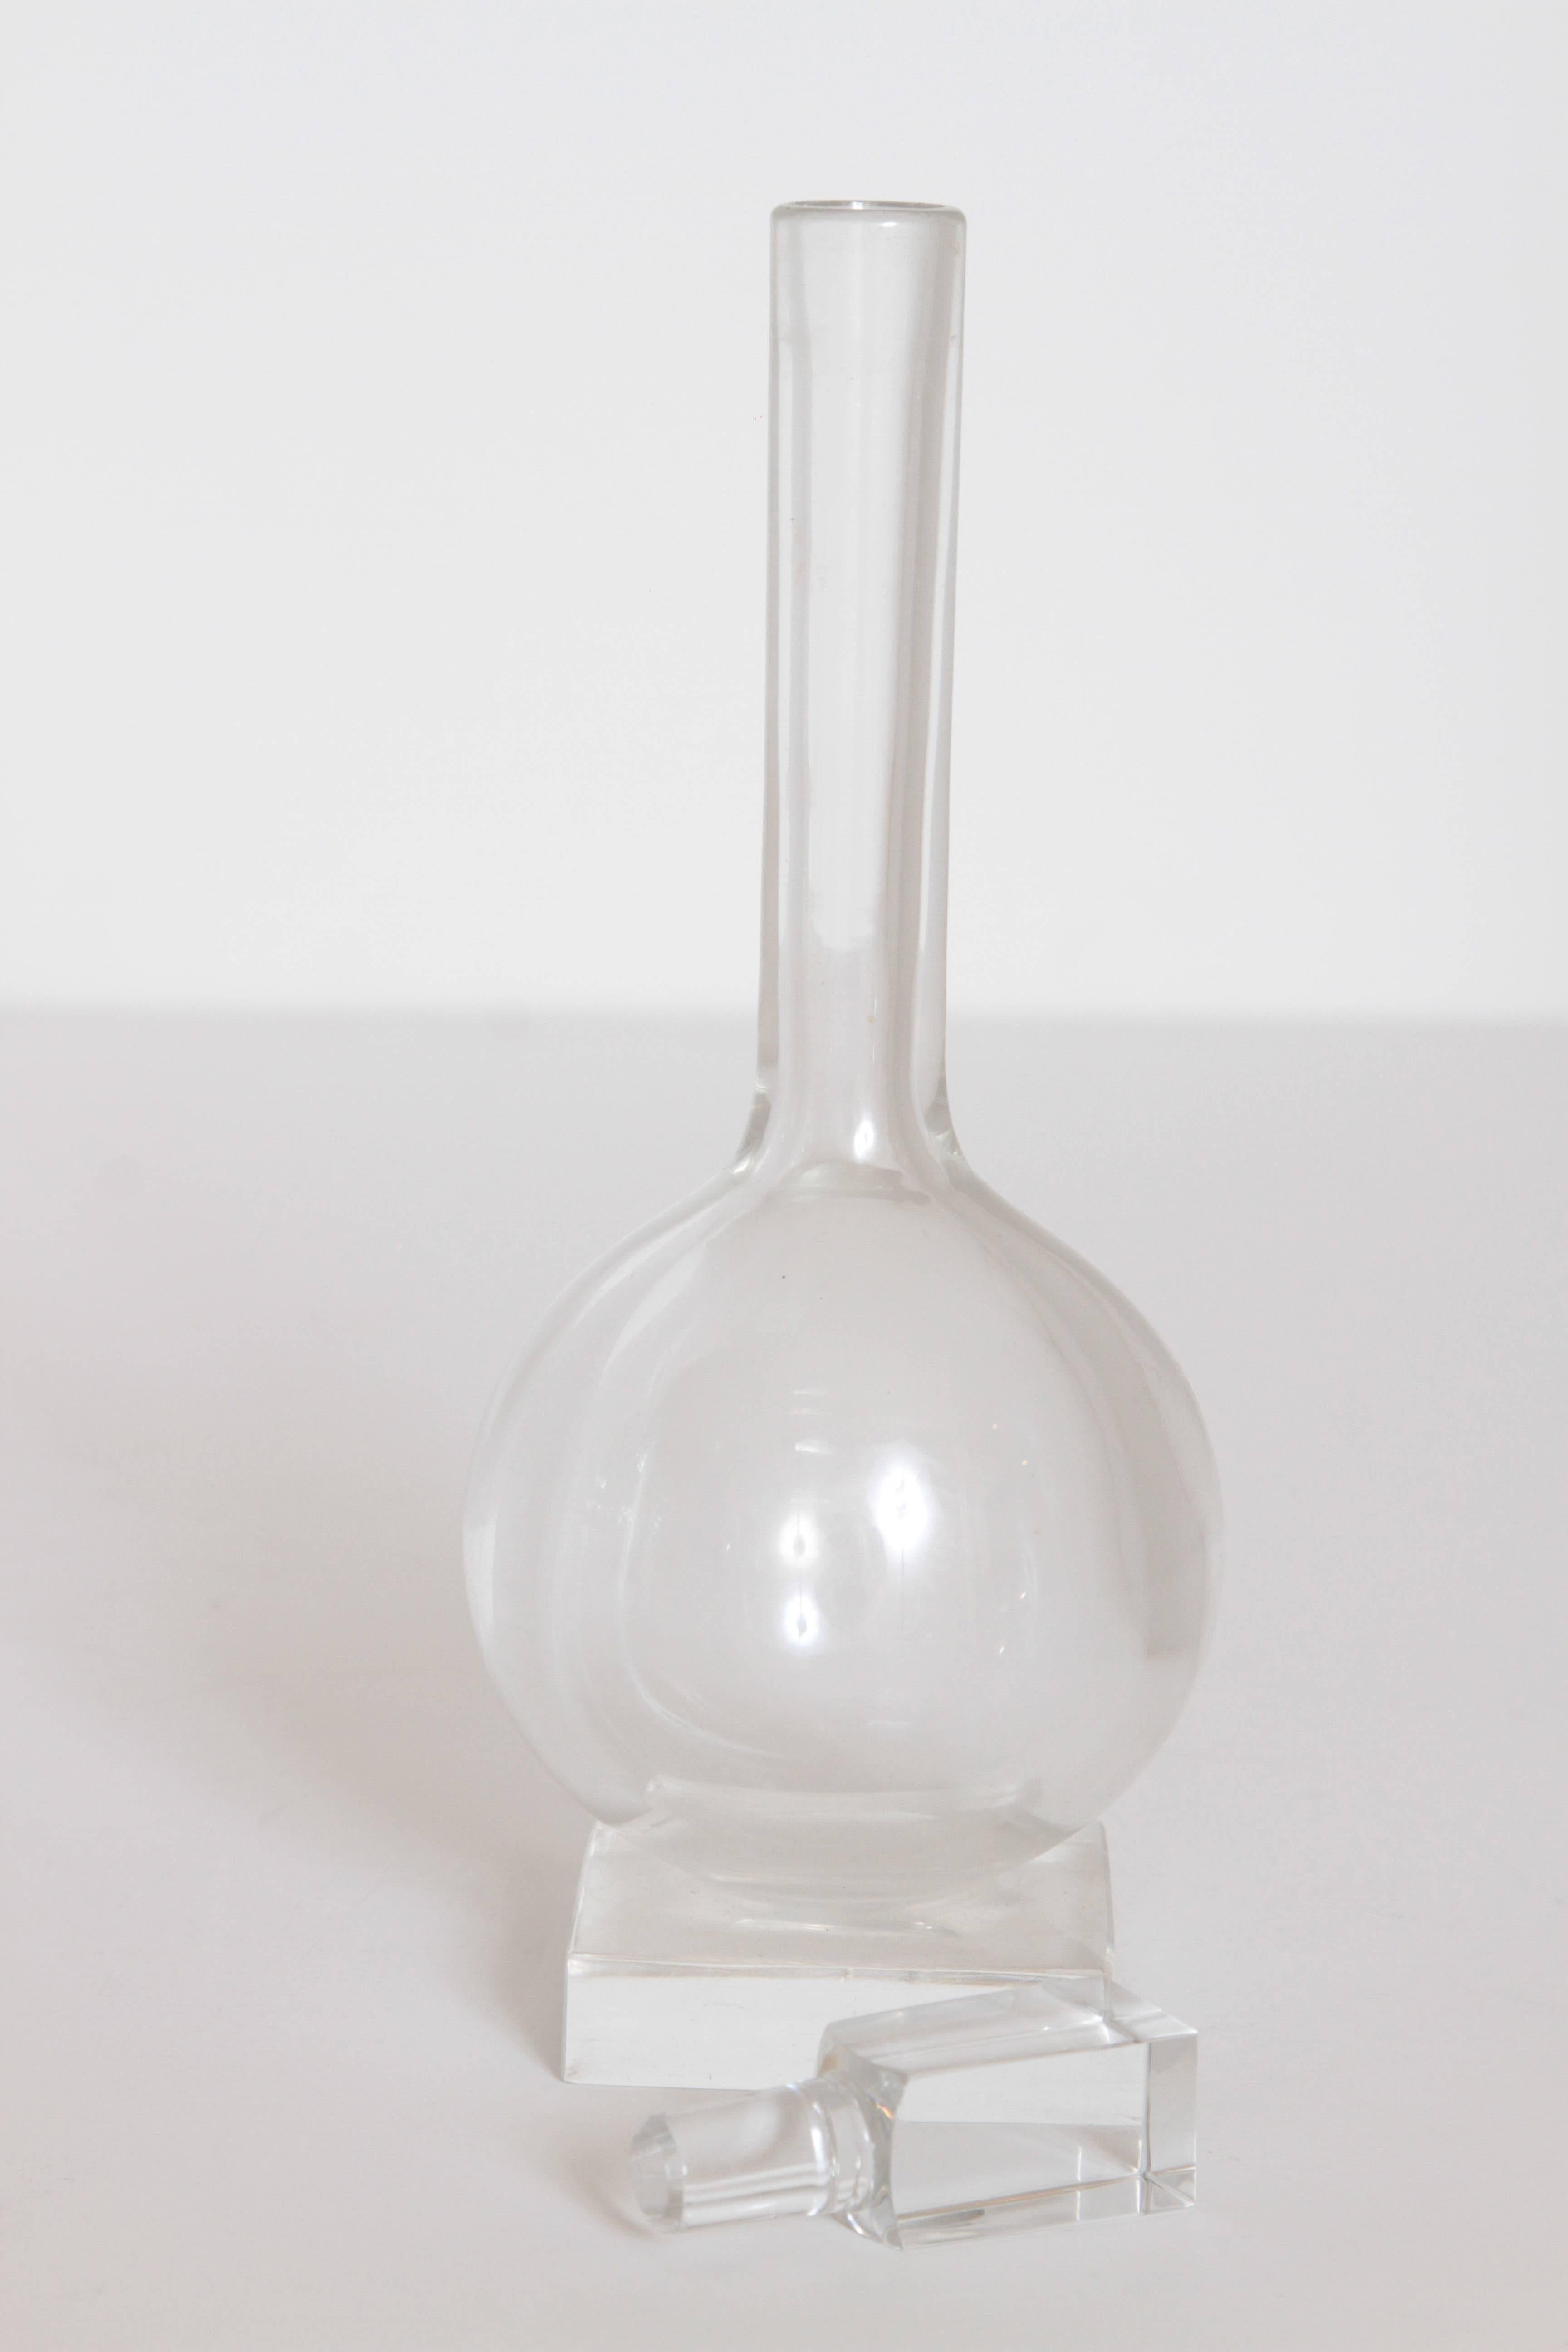 Art Deco Libbey Crystal Knickerbocker 1930s Glass Designs by Edwin Fuerst For Sale 1